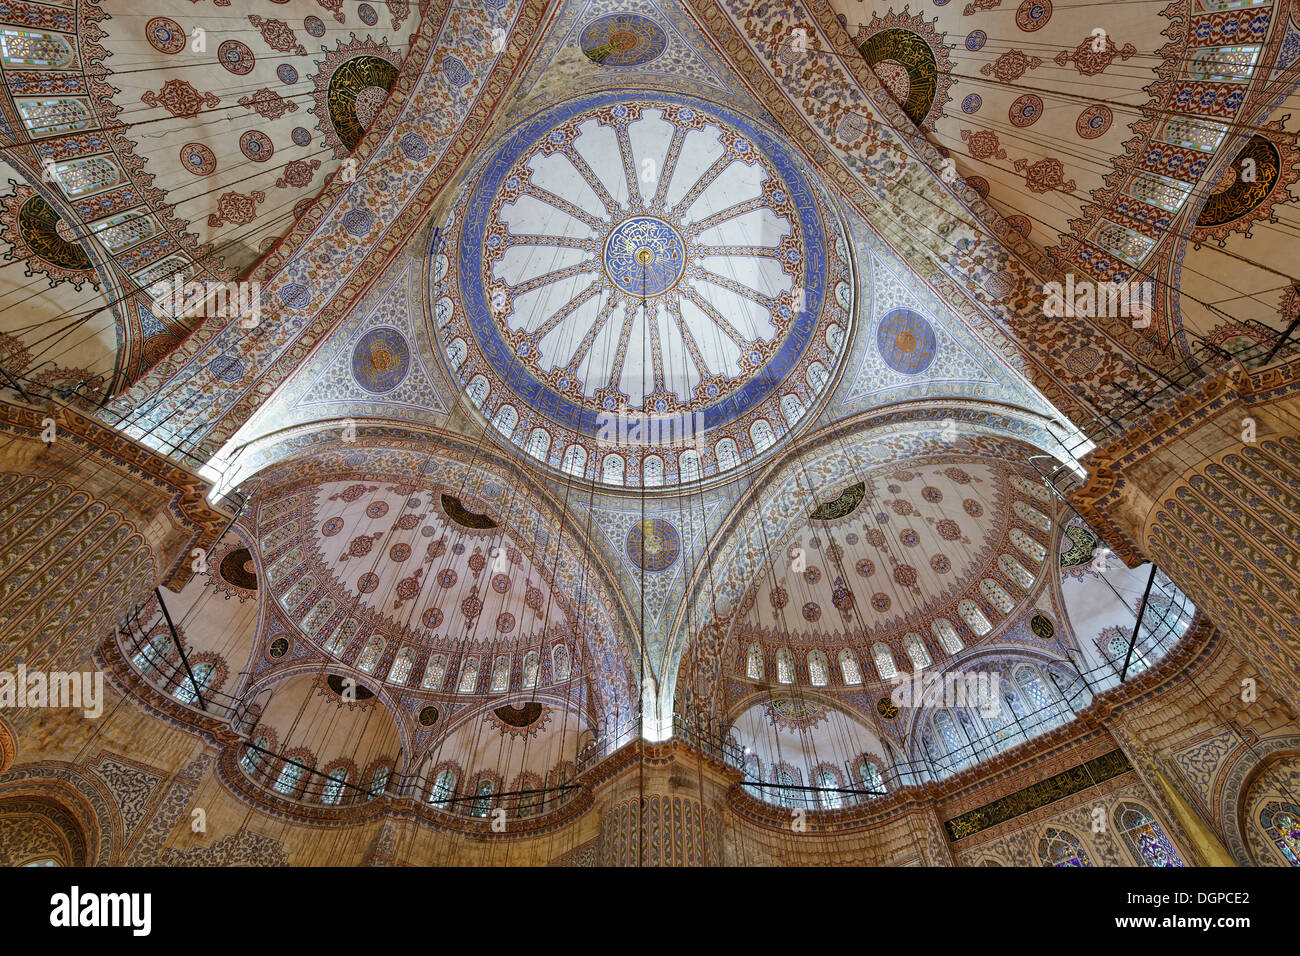 Hauptkuppel der blauen Moschee, Sultan Ahmed Mosque oder Sultanahmet Camii, Istanbul, Europäische Side, Türkei, Europa Stockfoto